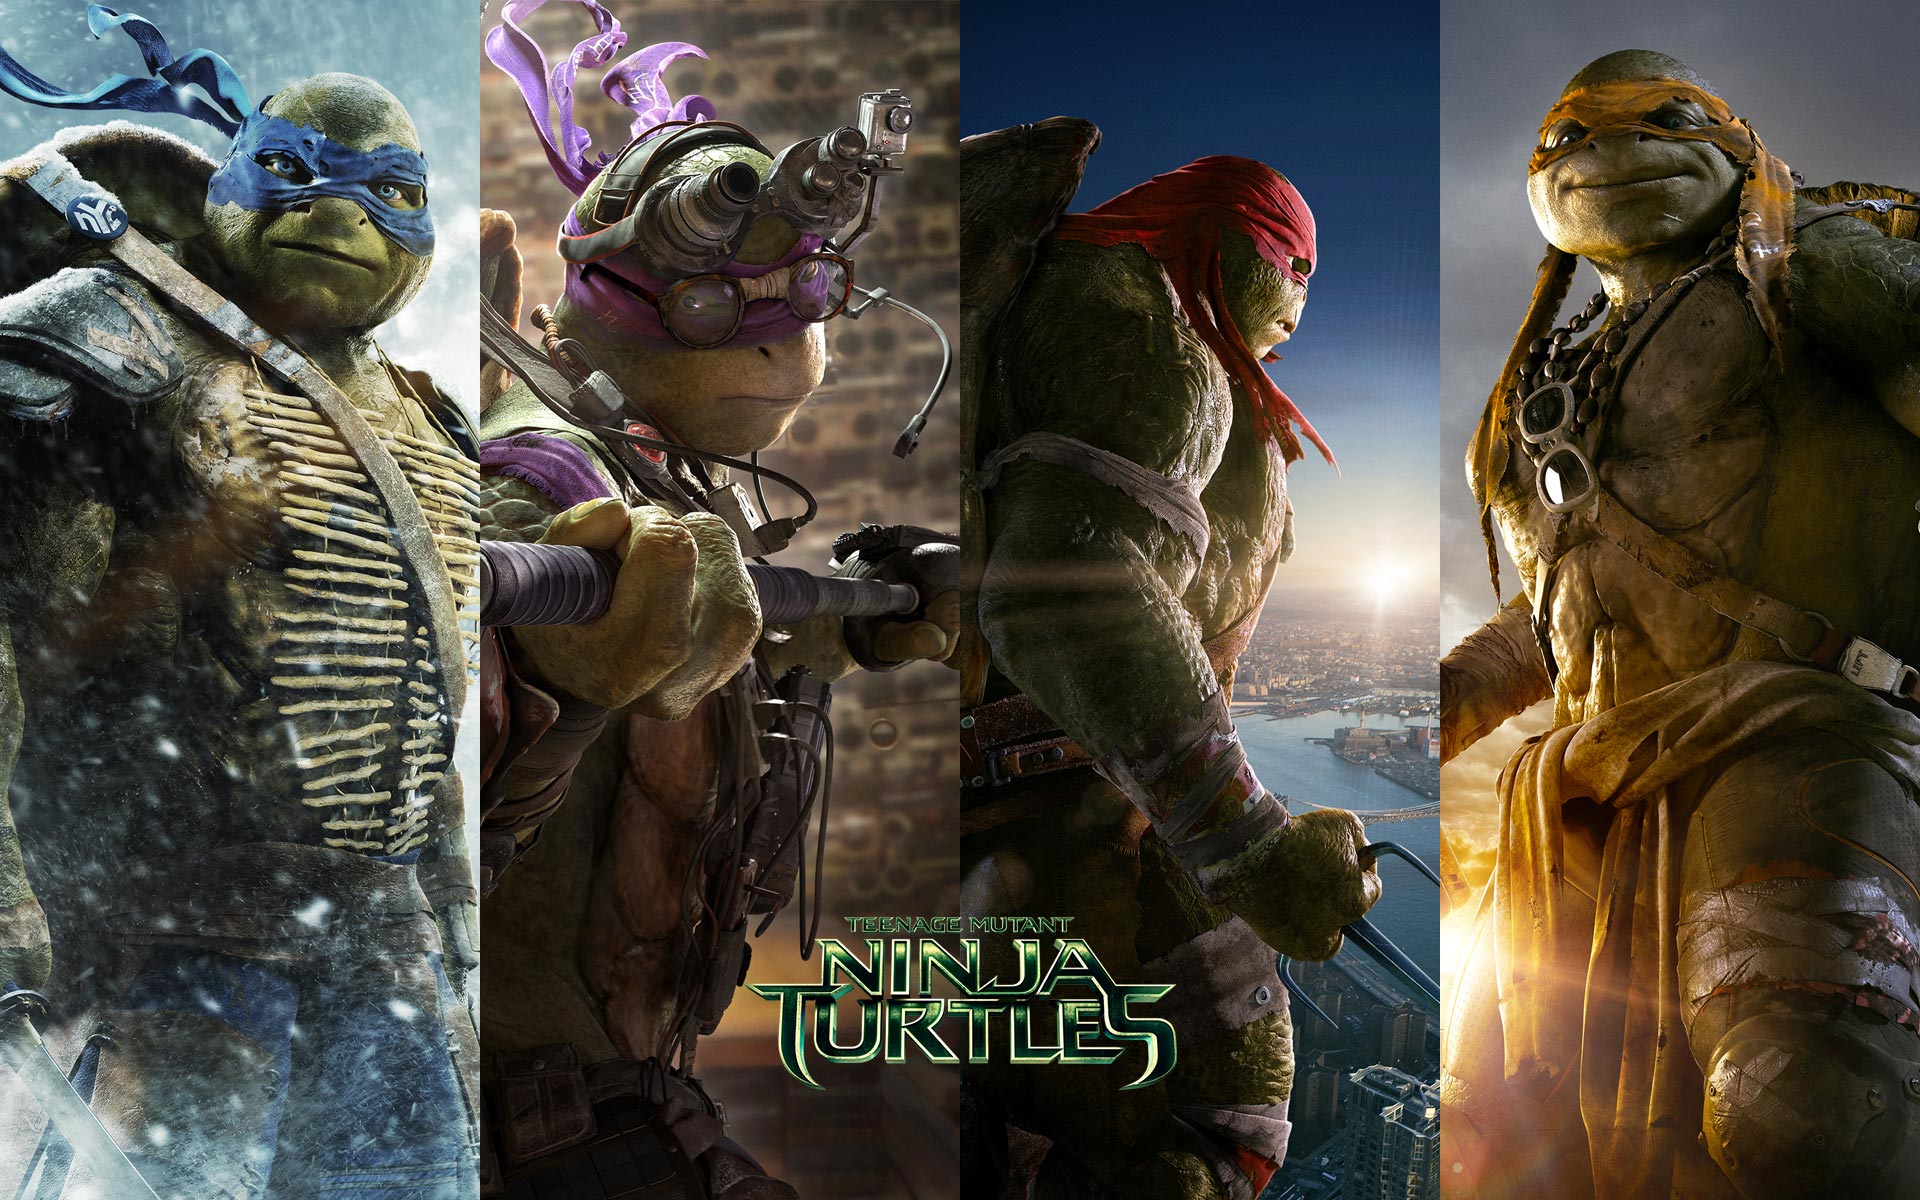 Teenage Mutant Ninja Turtles (2014) High Quality Background on Wallpapers Vista